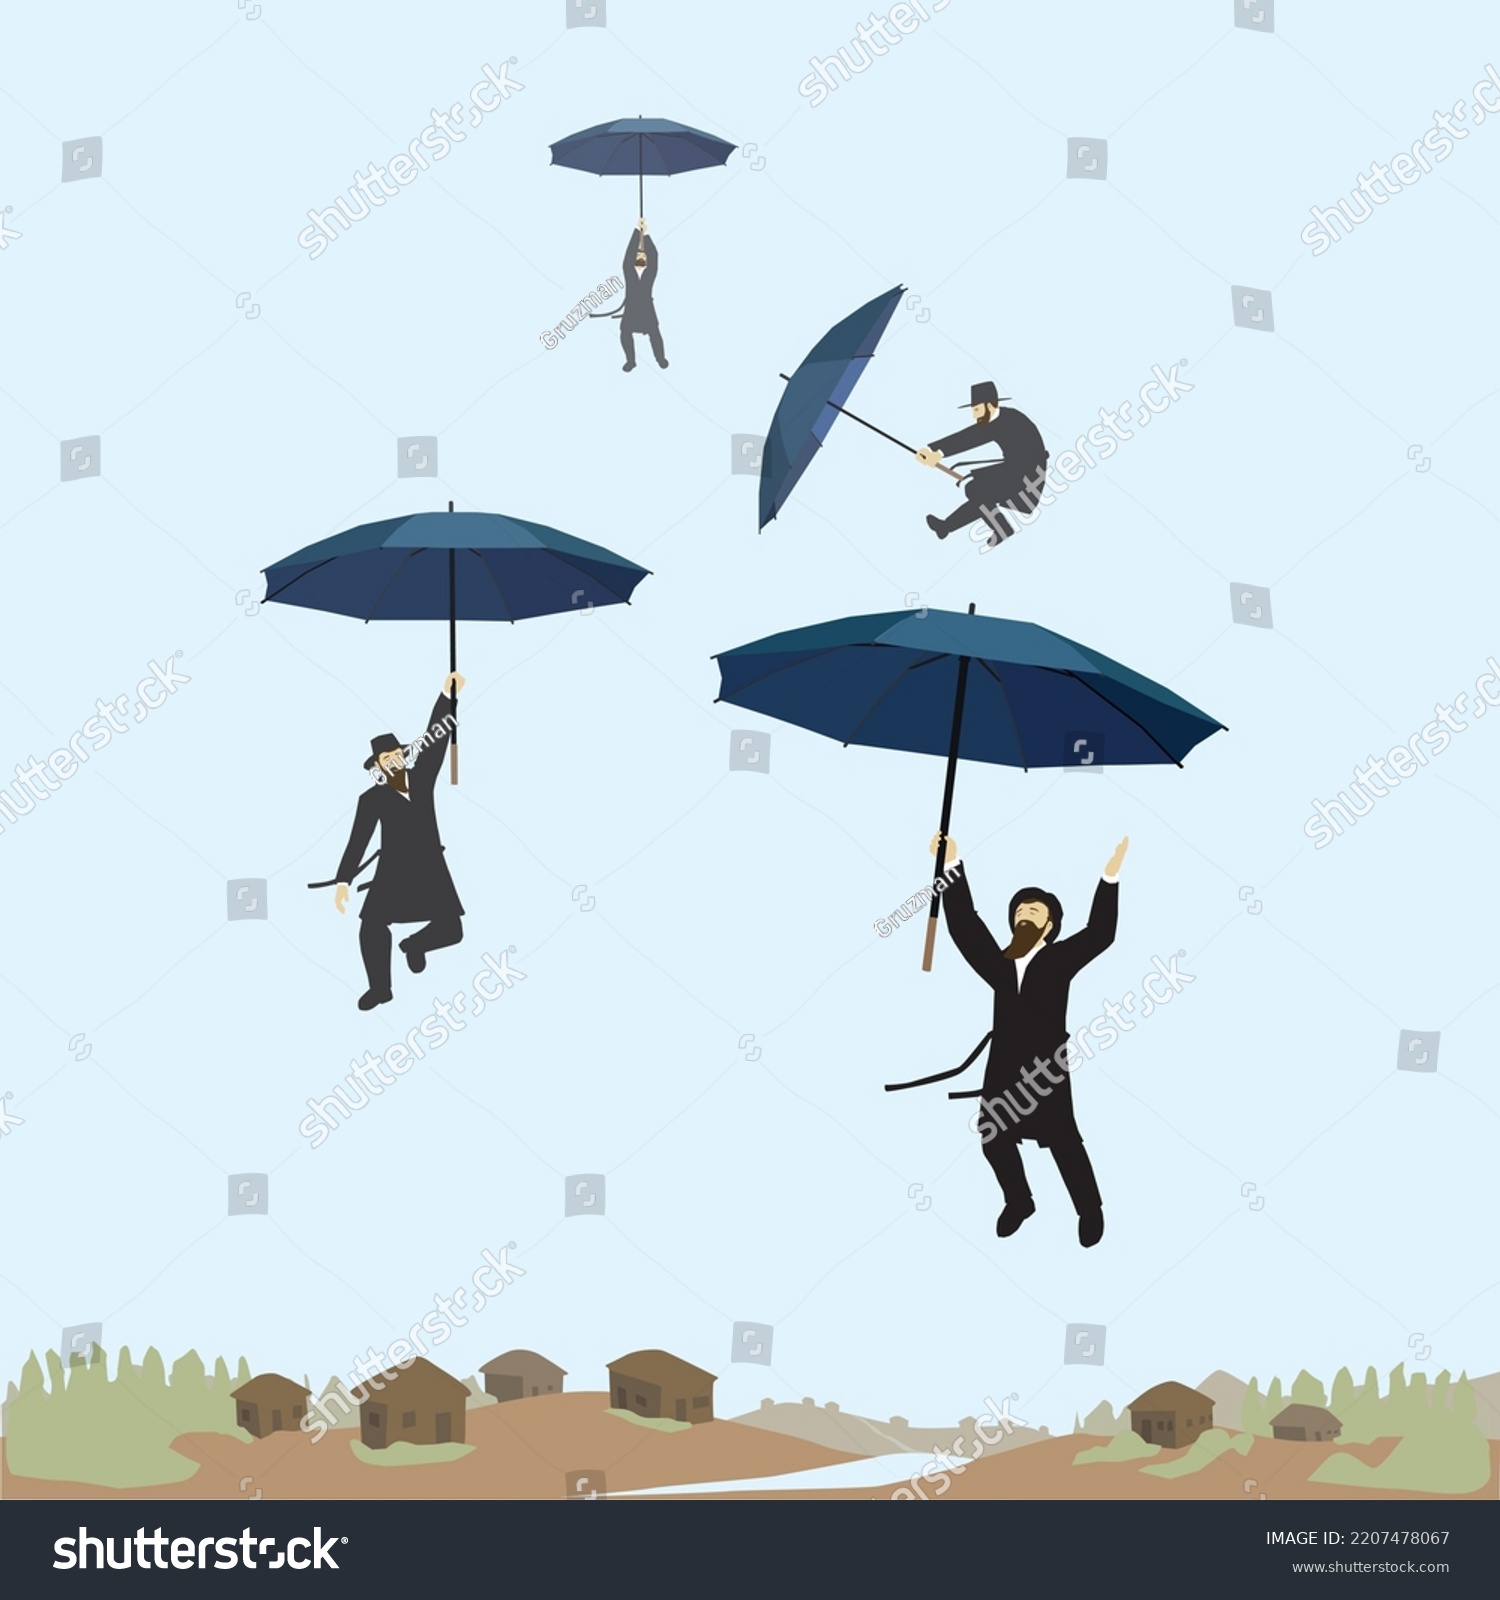 ציור וקטורי של חסידים עפים באויר באוויר עם מטריות ביד רוקדים תפילת הגשם-2207478067.jpg